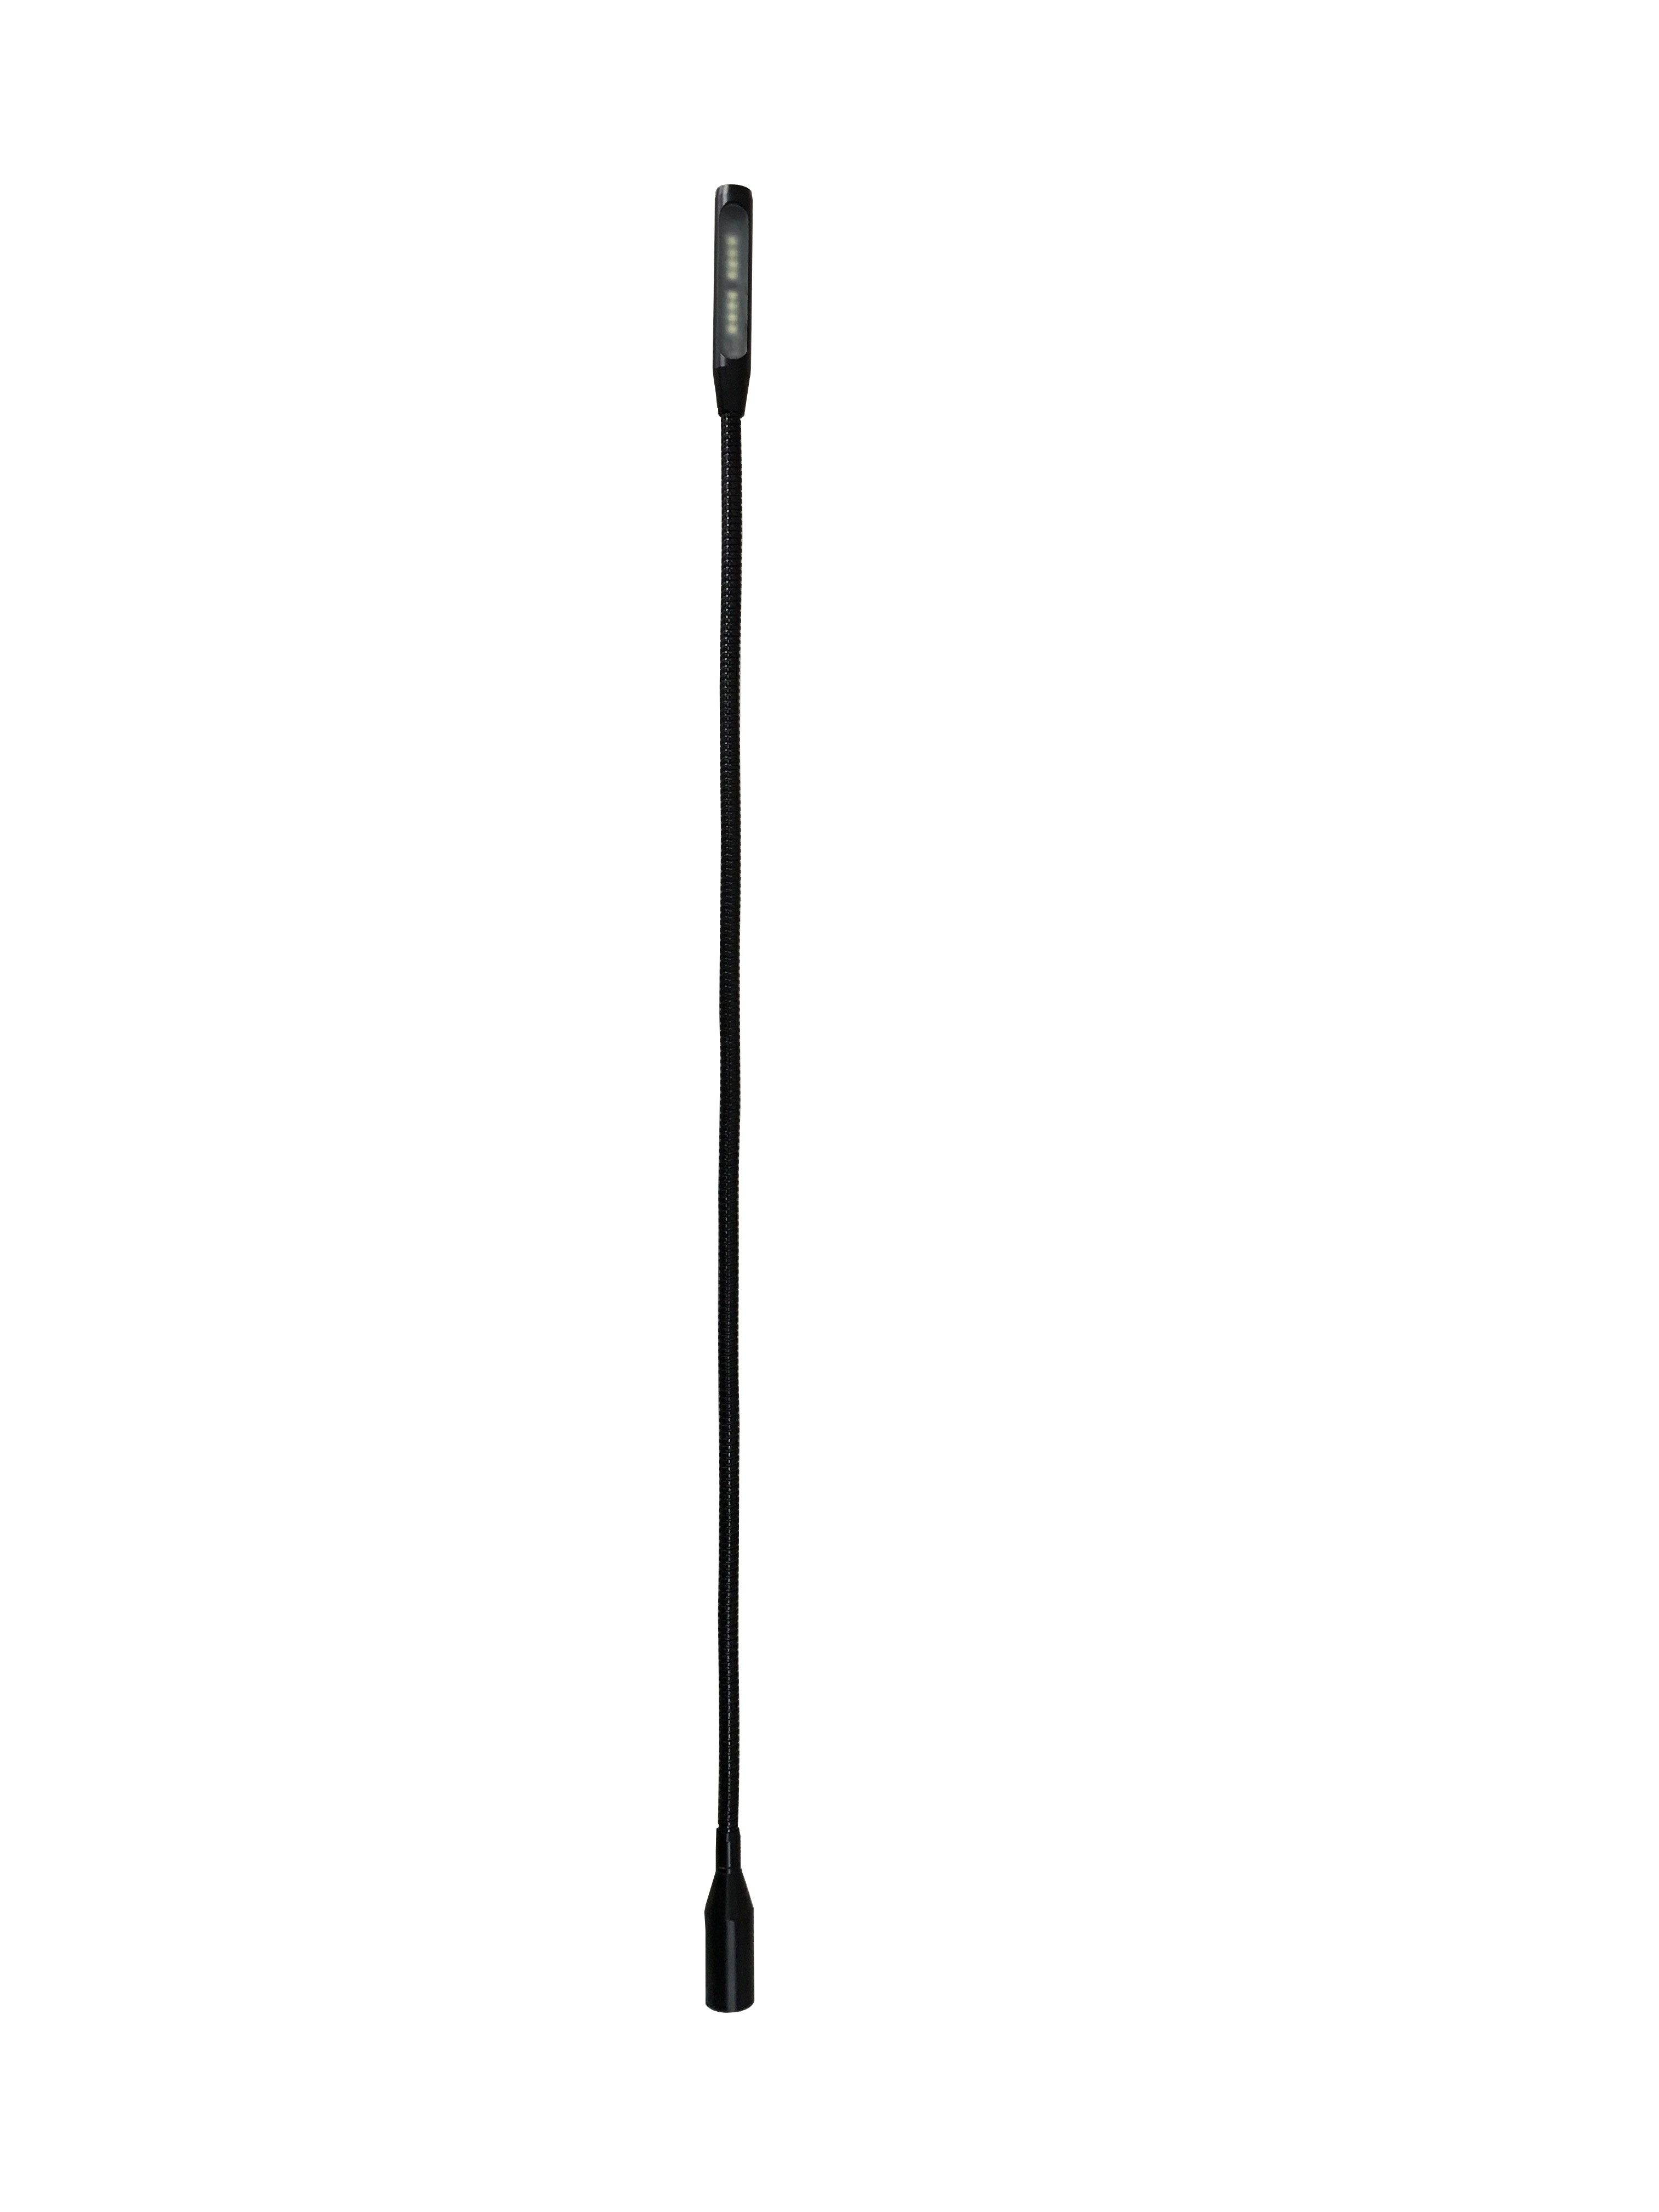 Gooseneck lamp (XLR 4 pin Male) - 70cm